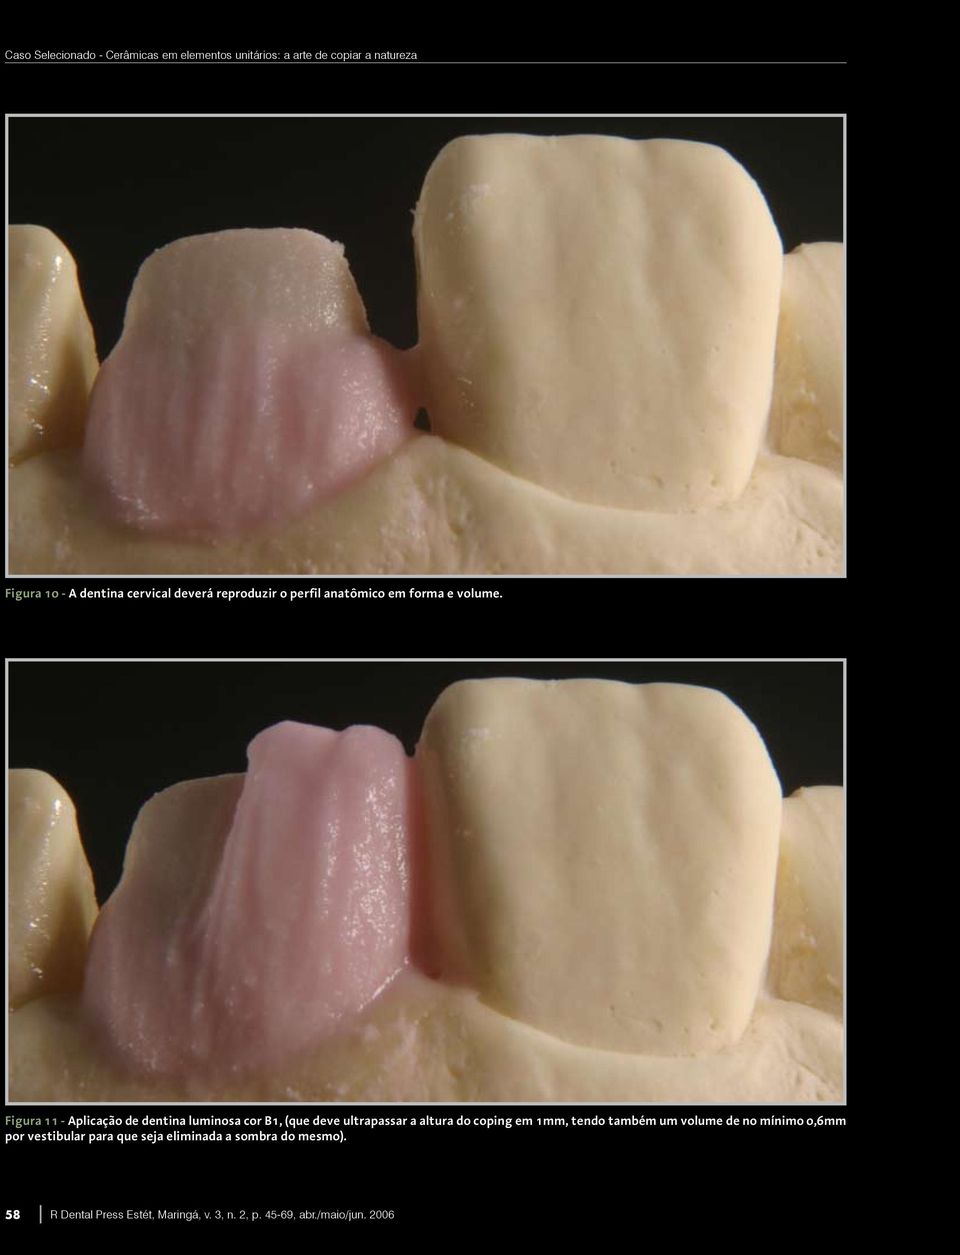 Figura 11 - Aplicação de dentina luminosa cor B1, (que deve ultrapassar a altura do coping